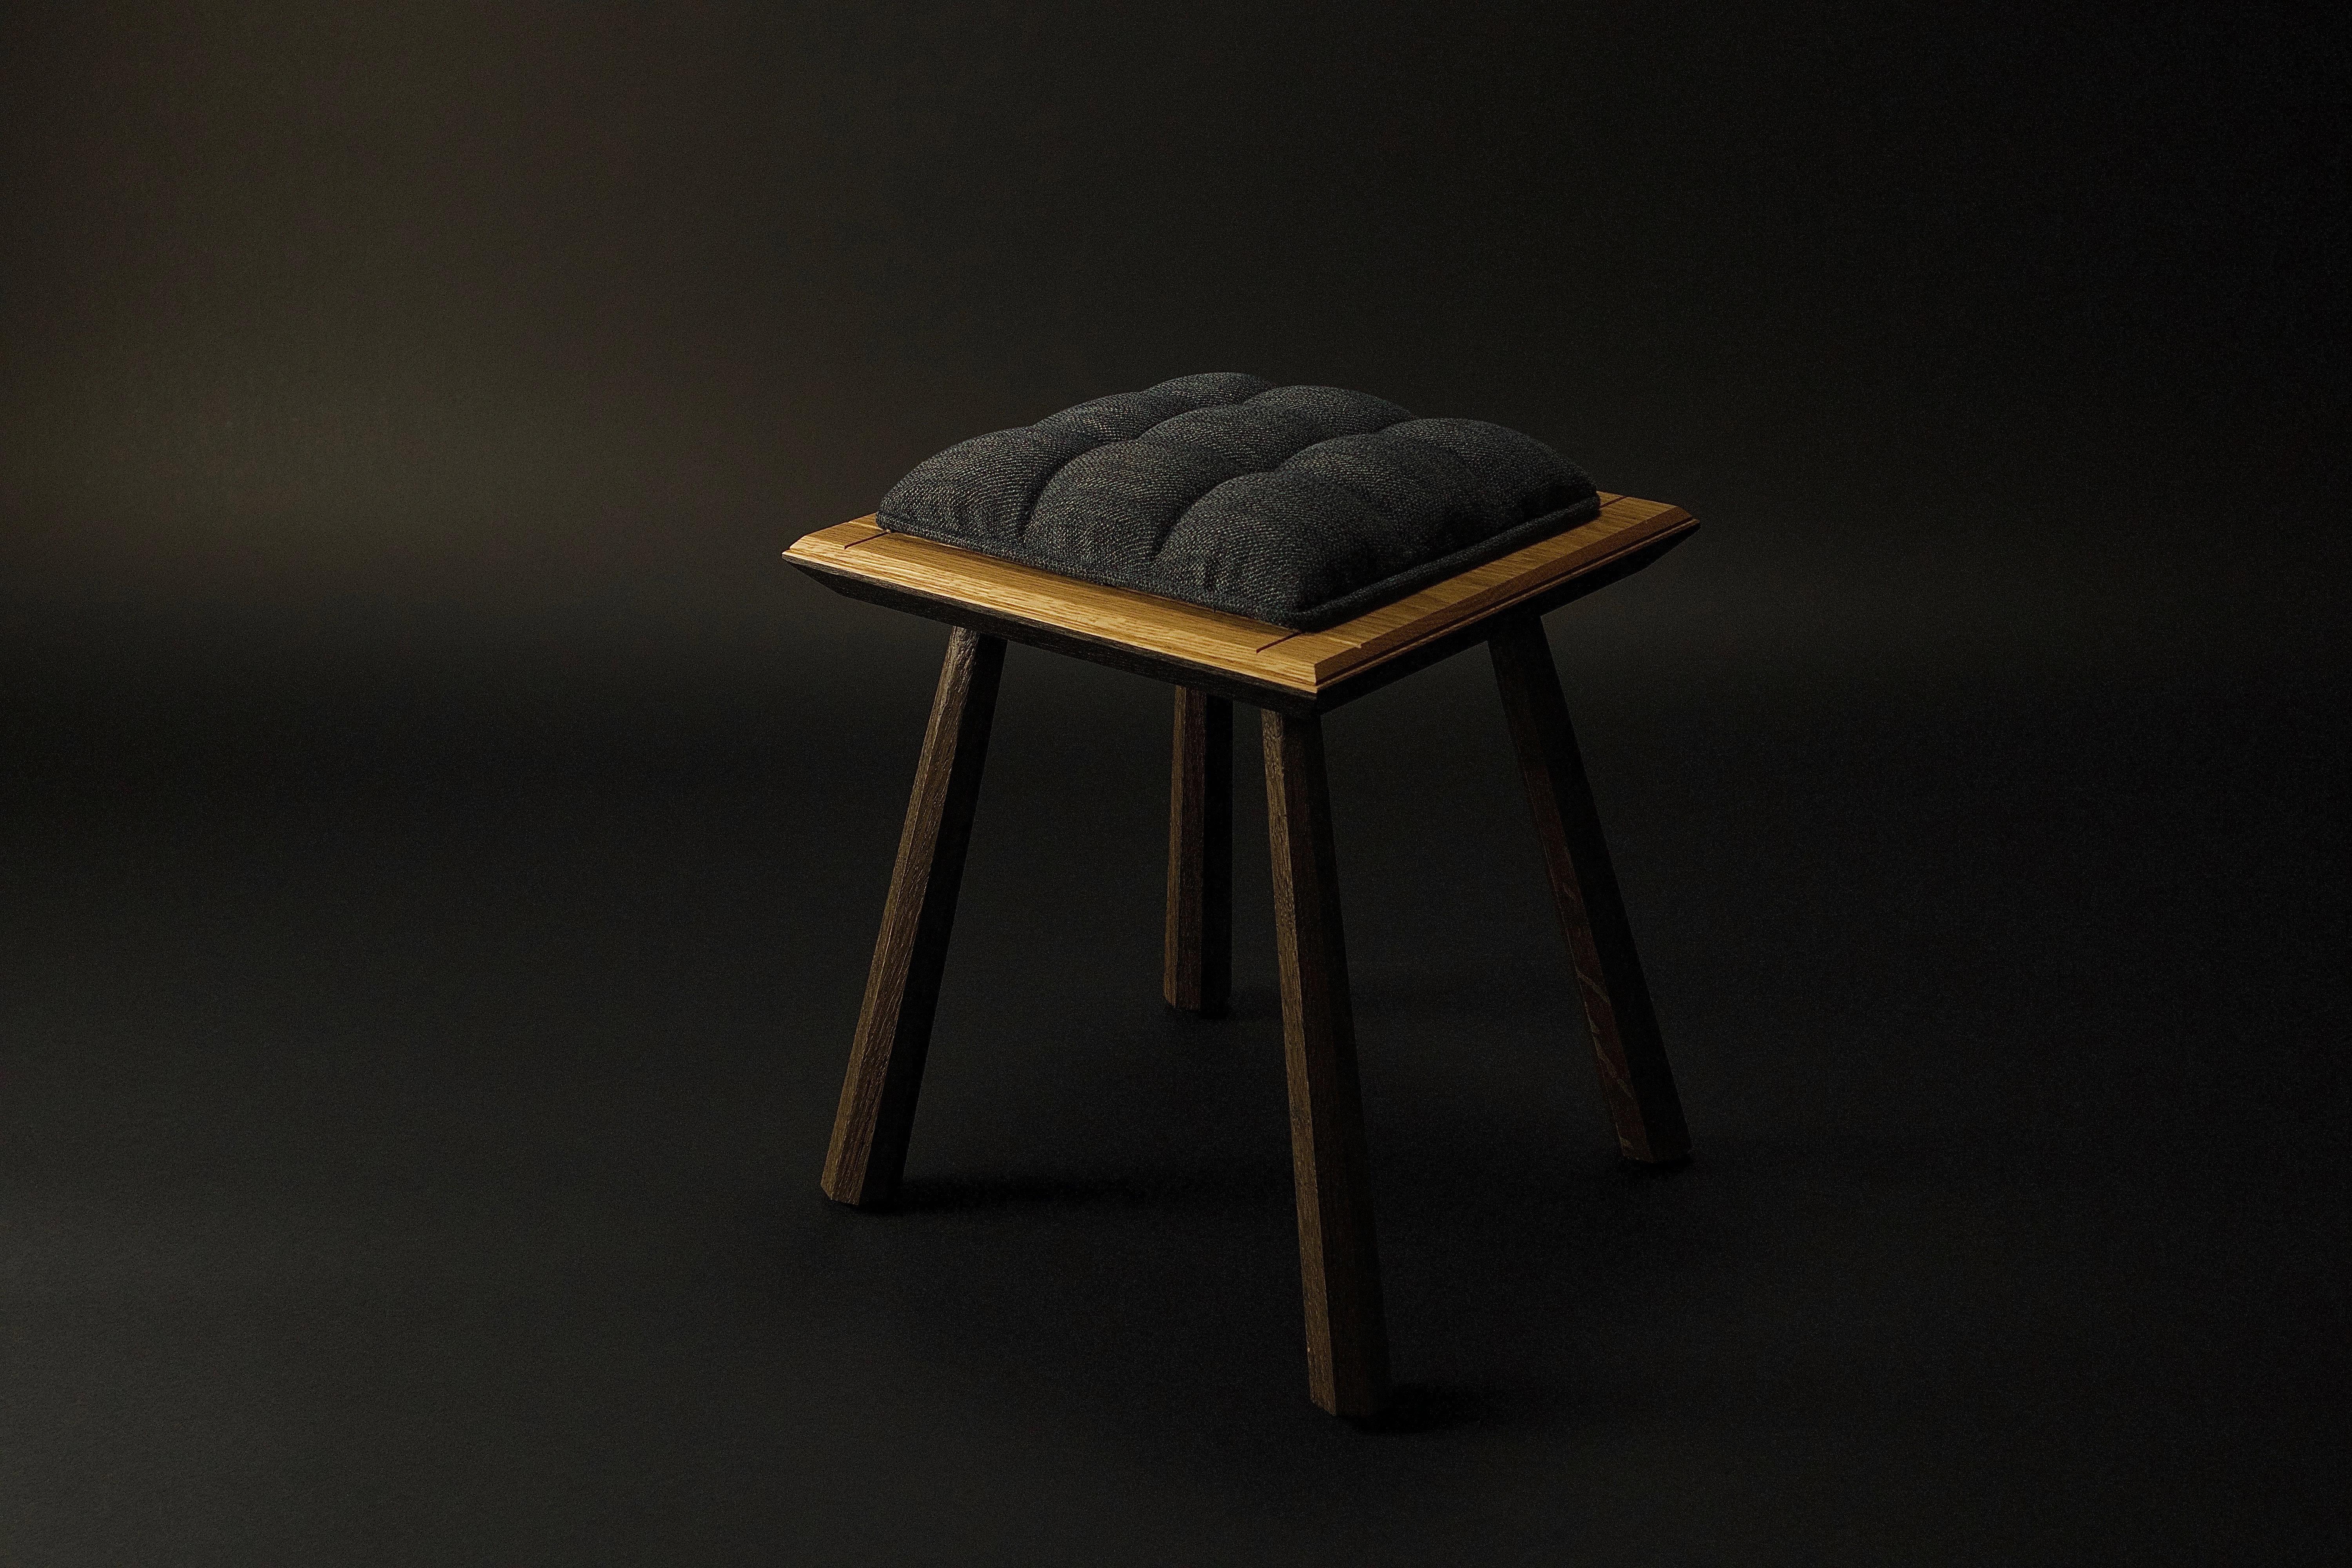 Die handwerklichen Designermöbel von Kenton Jeske woodworker werden in Bezug auf Handwerk, MATERIAL und Verarbeitung auf höchstem Niveau hergestellt. Das skulpturale und sinnliche Design in Verbindung mit einer zeitgemäßen Handwerkskunst schafft